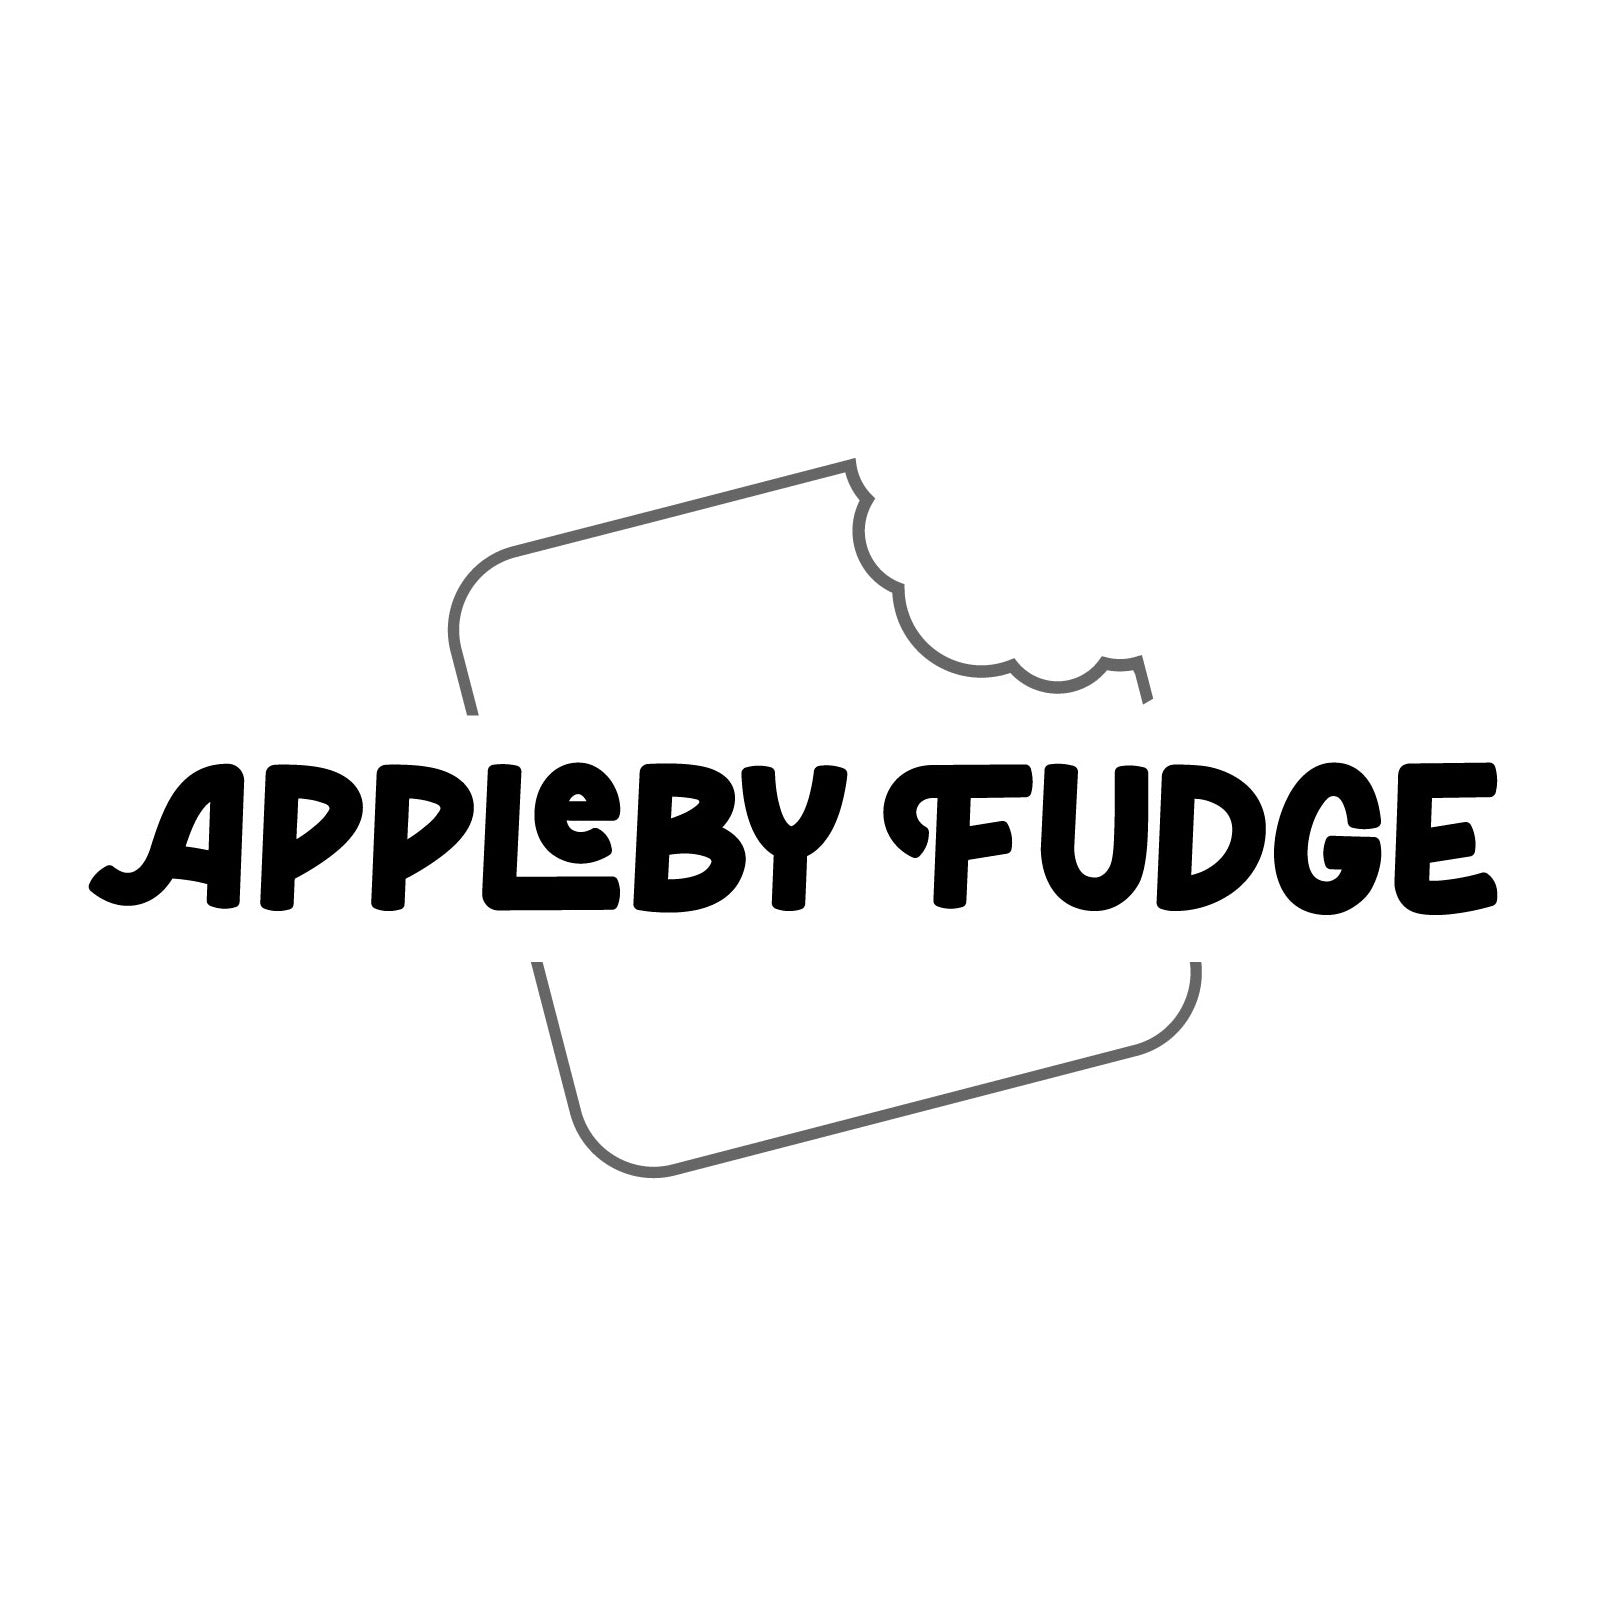 Appleby Fudge